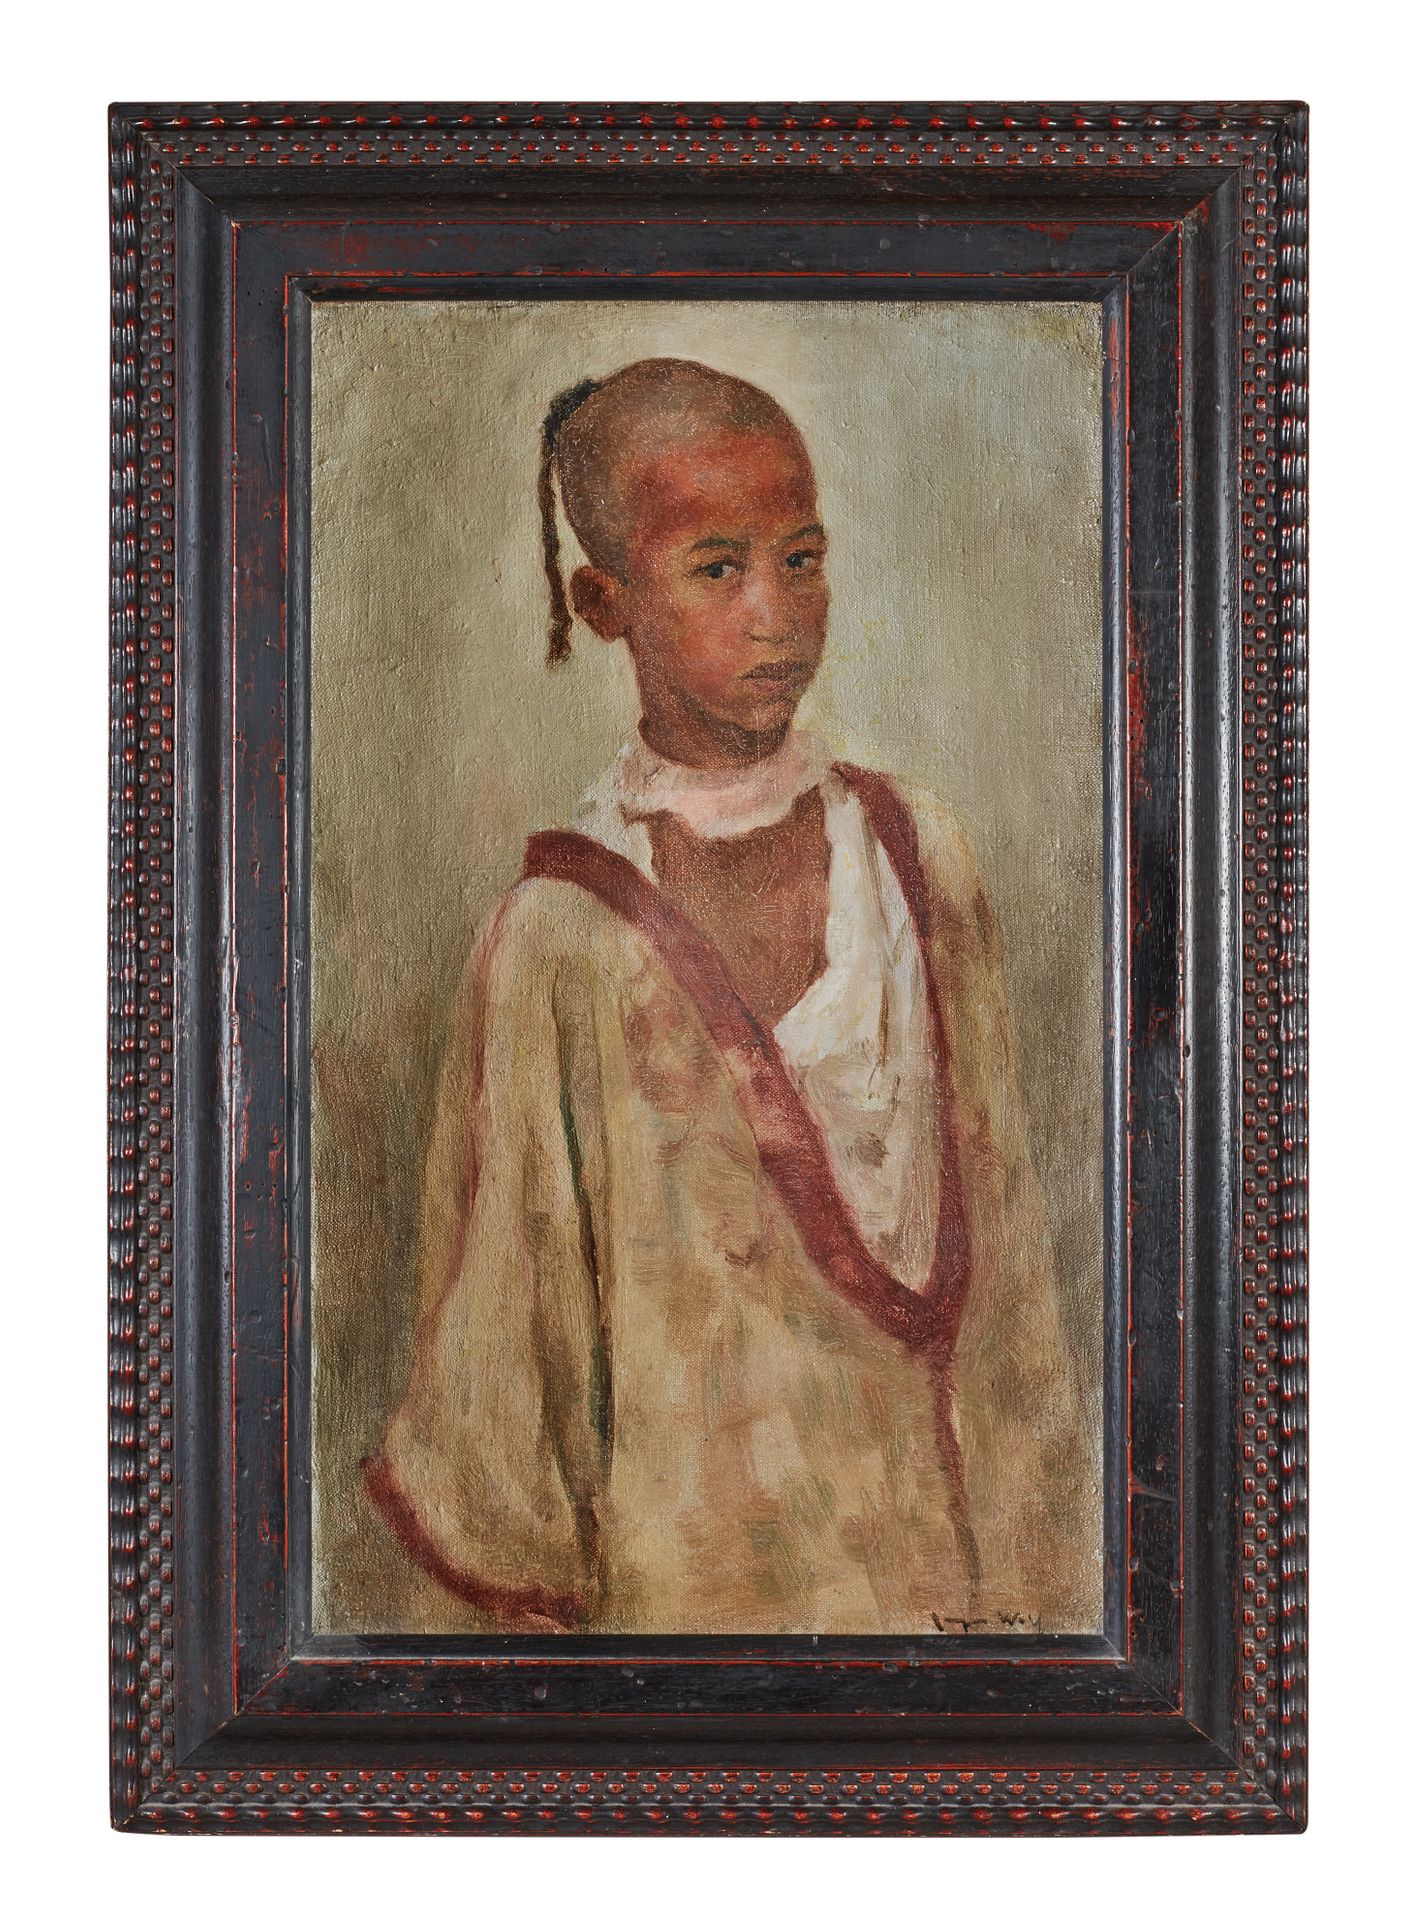 Null Francisque NOAILLY (1855-1942)

Retrato de un niño árabe

Cartón firmado en&hellip;